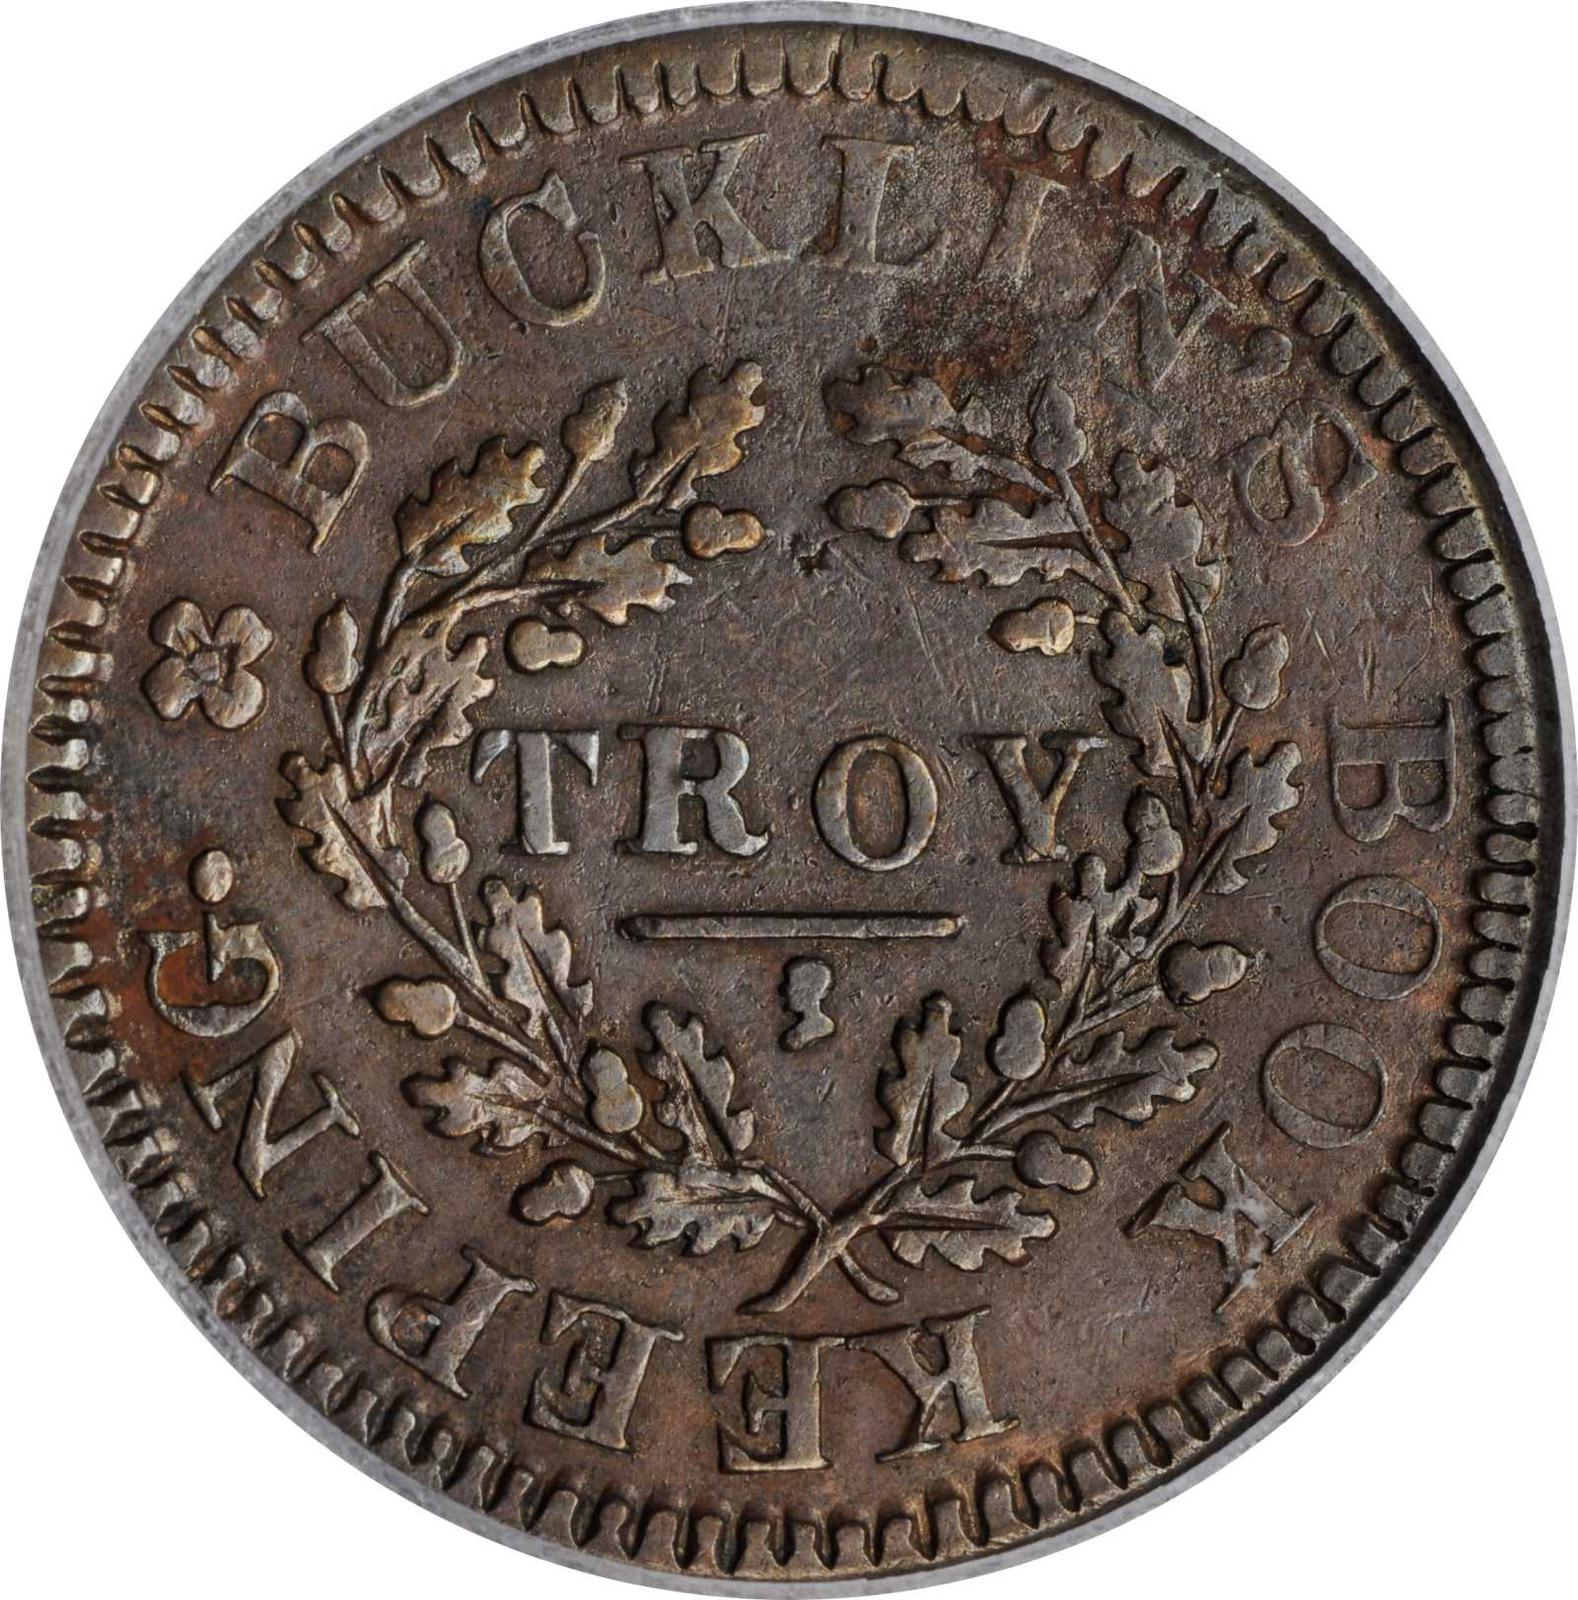 Troy, NY Tiny Head Under Troy, True Alb Under 1835 Token